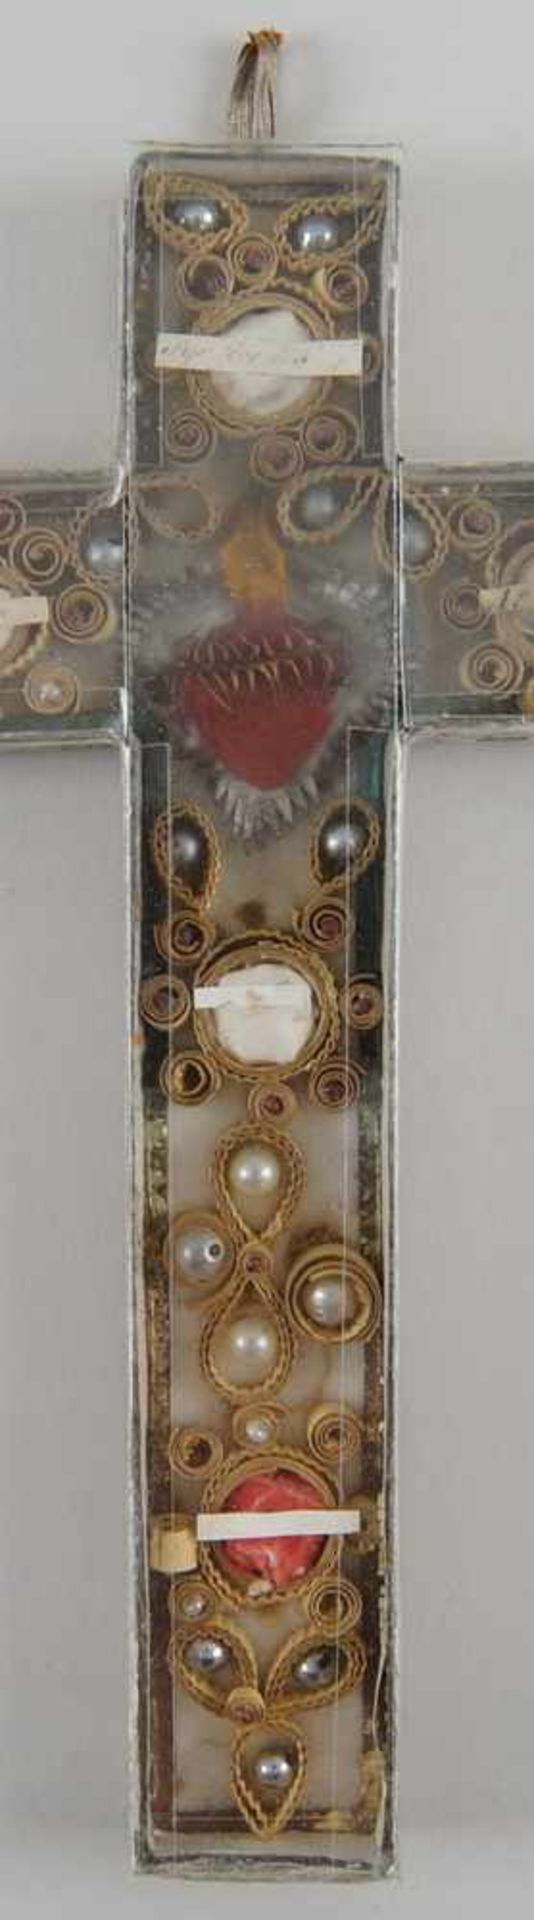 Feines Reliquienkreuz/Klosterarbeit hinter Glas, 20x12,5cm- - -24.00 % buyer's premium on the hammer - Bild 4 aus 6